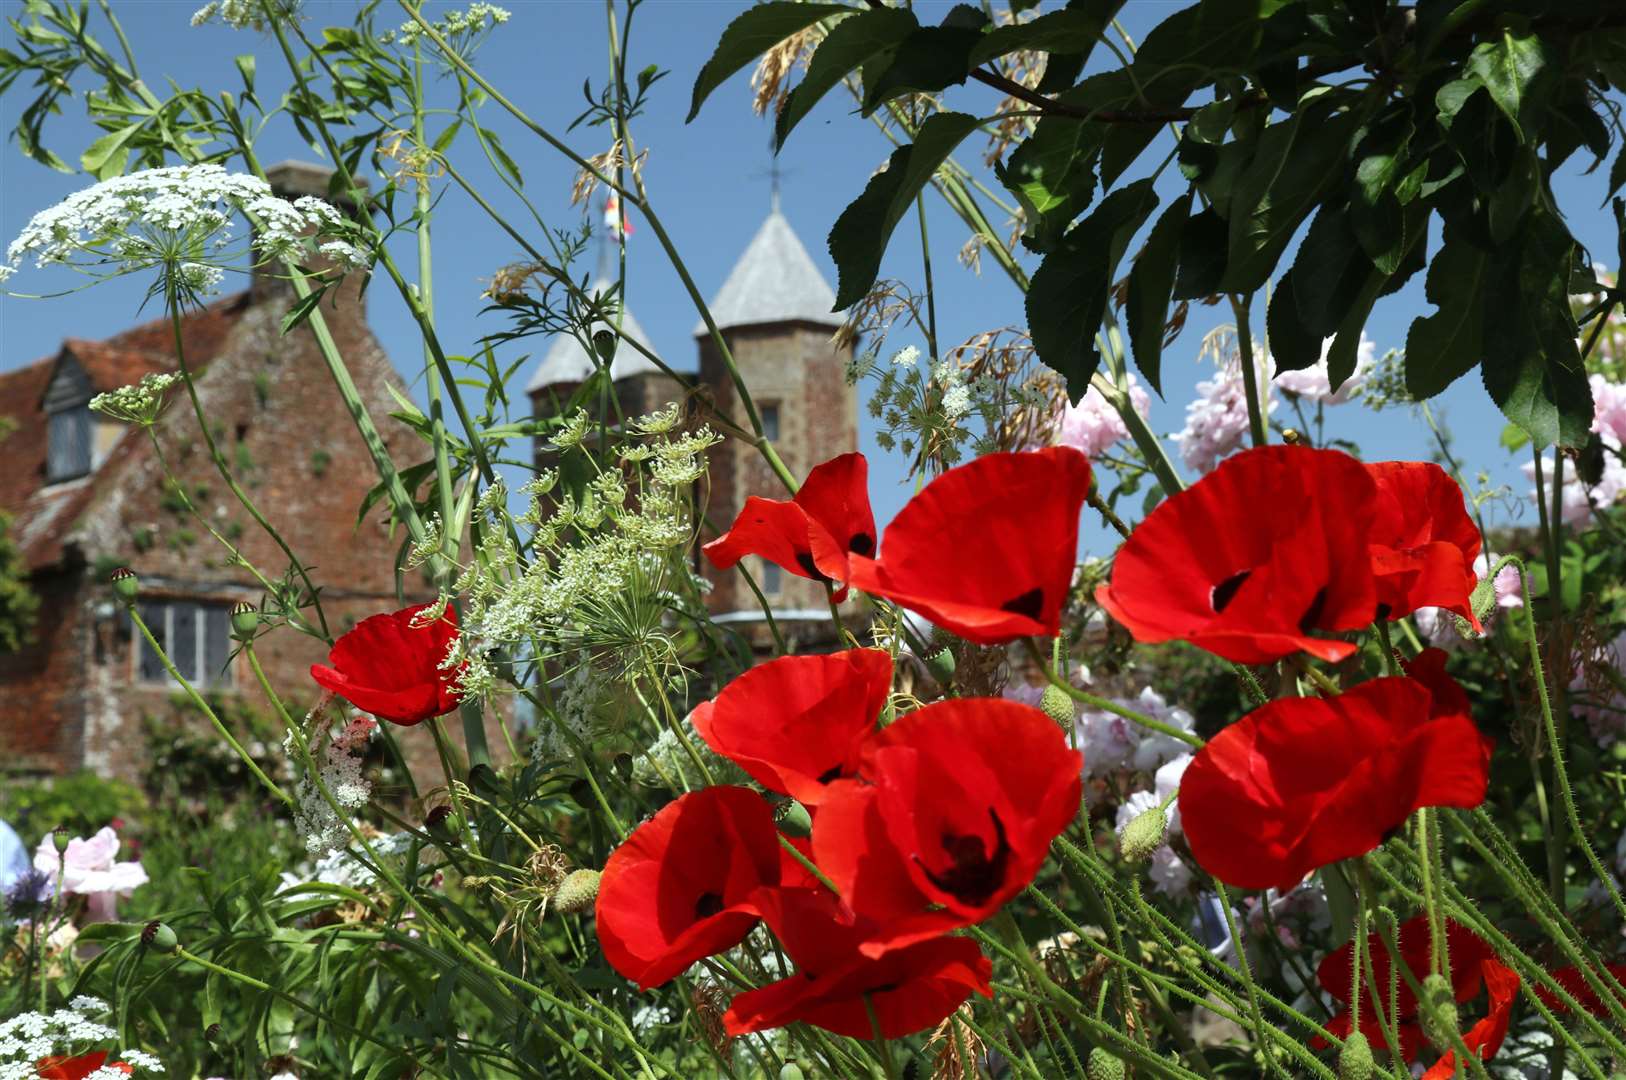 Poppies at Sissinghurst Castle Garden Picture: National Trust/Jo Hatcher